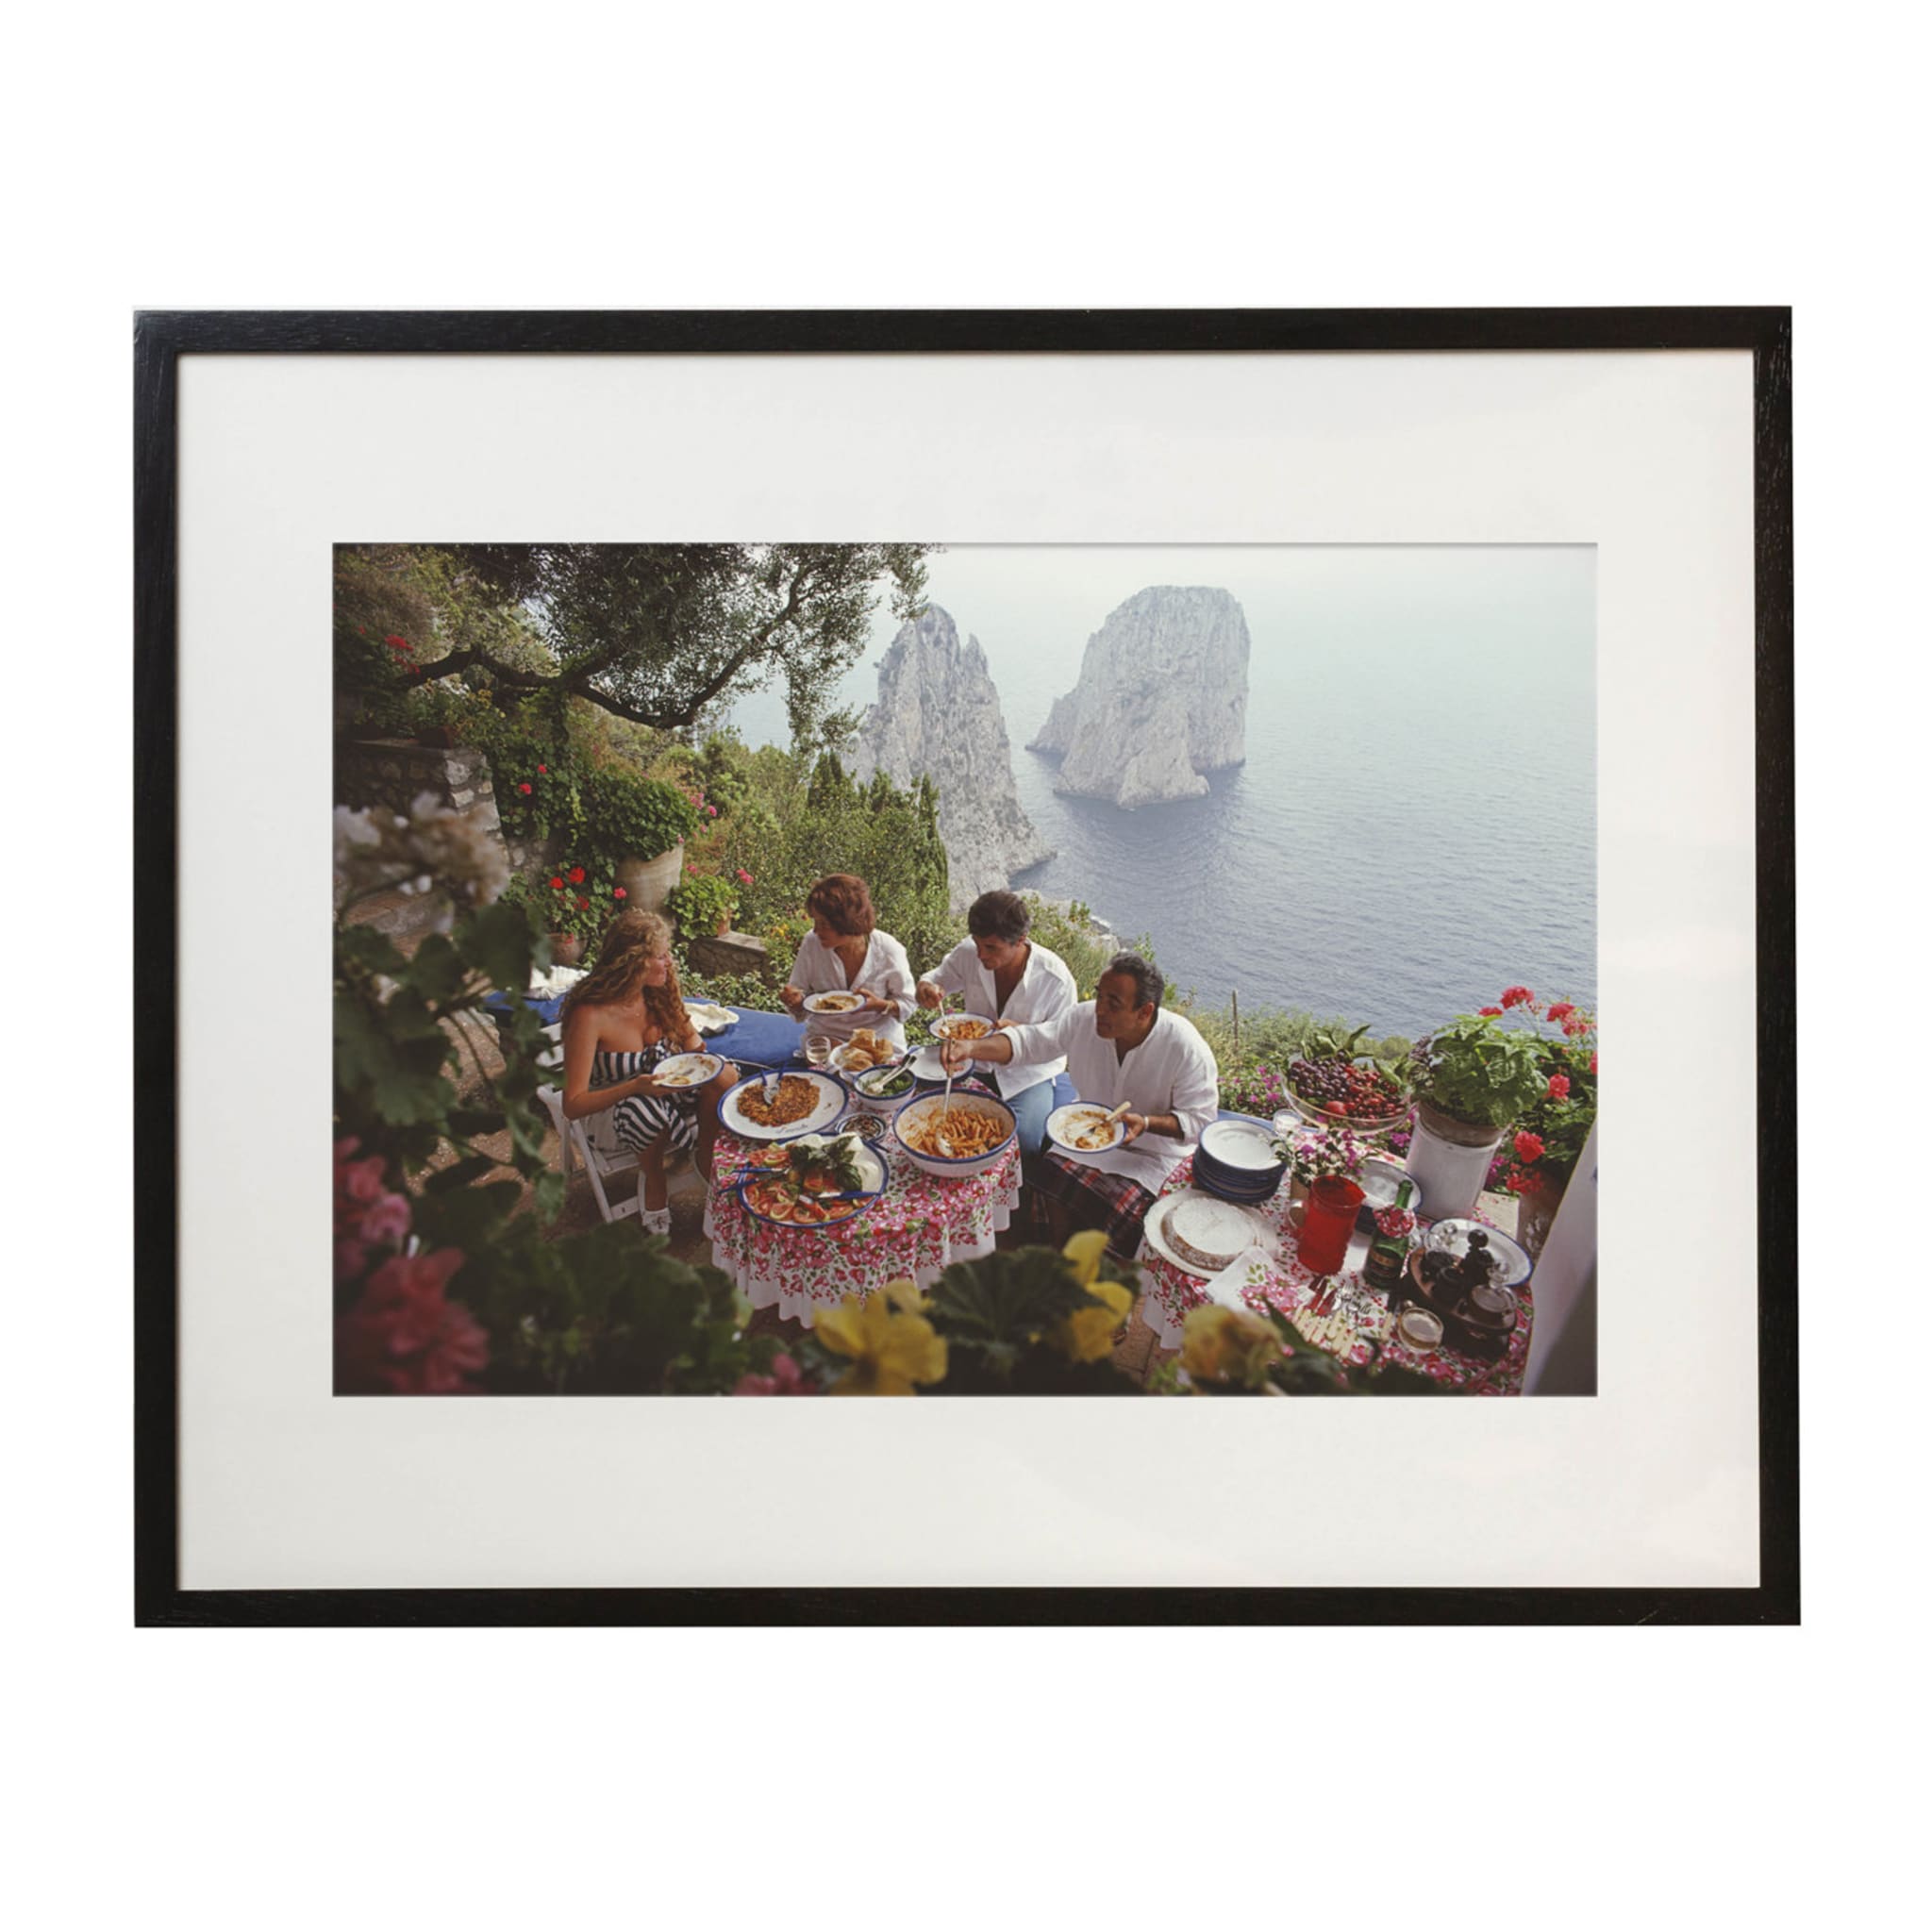 Dining Al Fresco On Capri - Photo encadrée par Slim Aarons - Vue principale